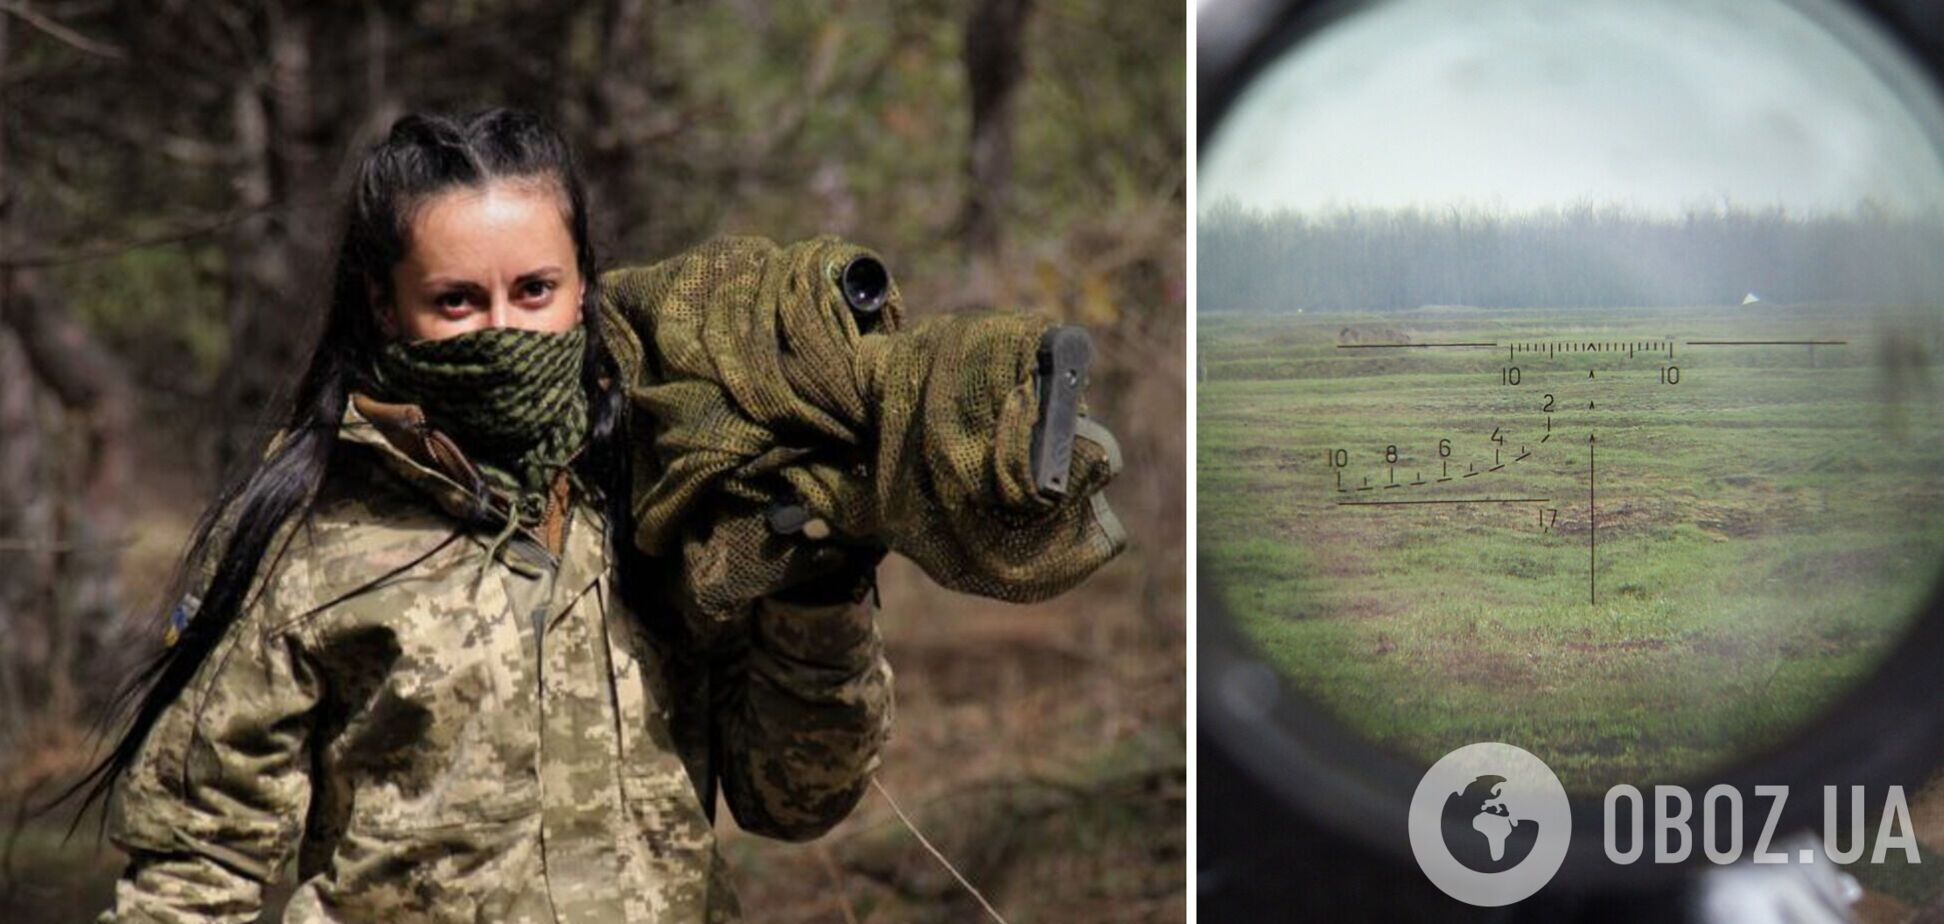 'Стоятиму до останнього': українська снайперка 'Угольок' пояснила, чому воює проти окупантів